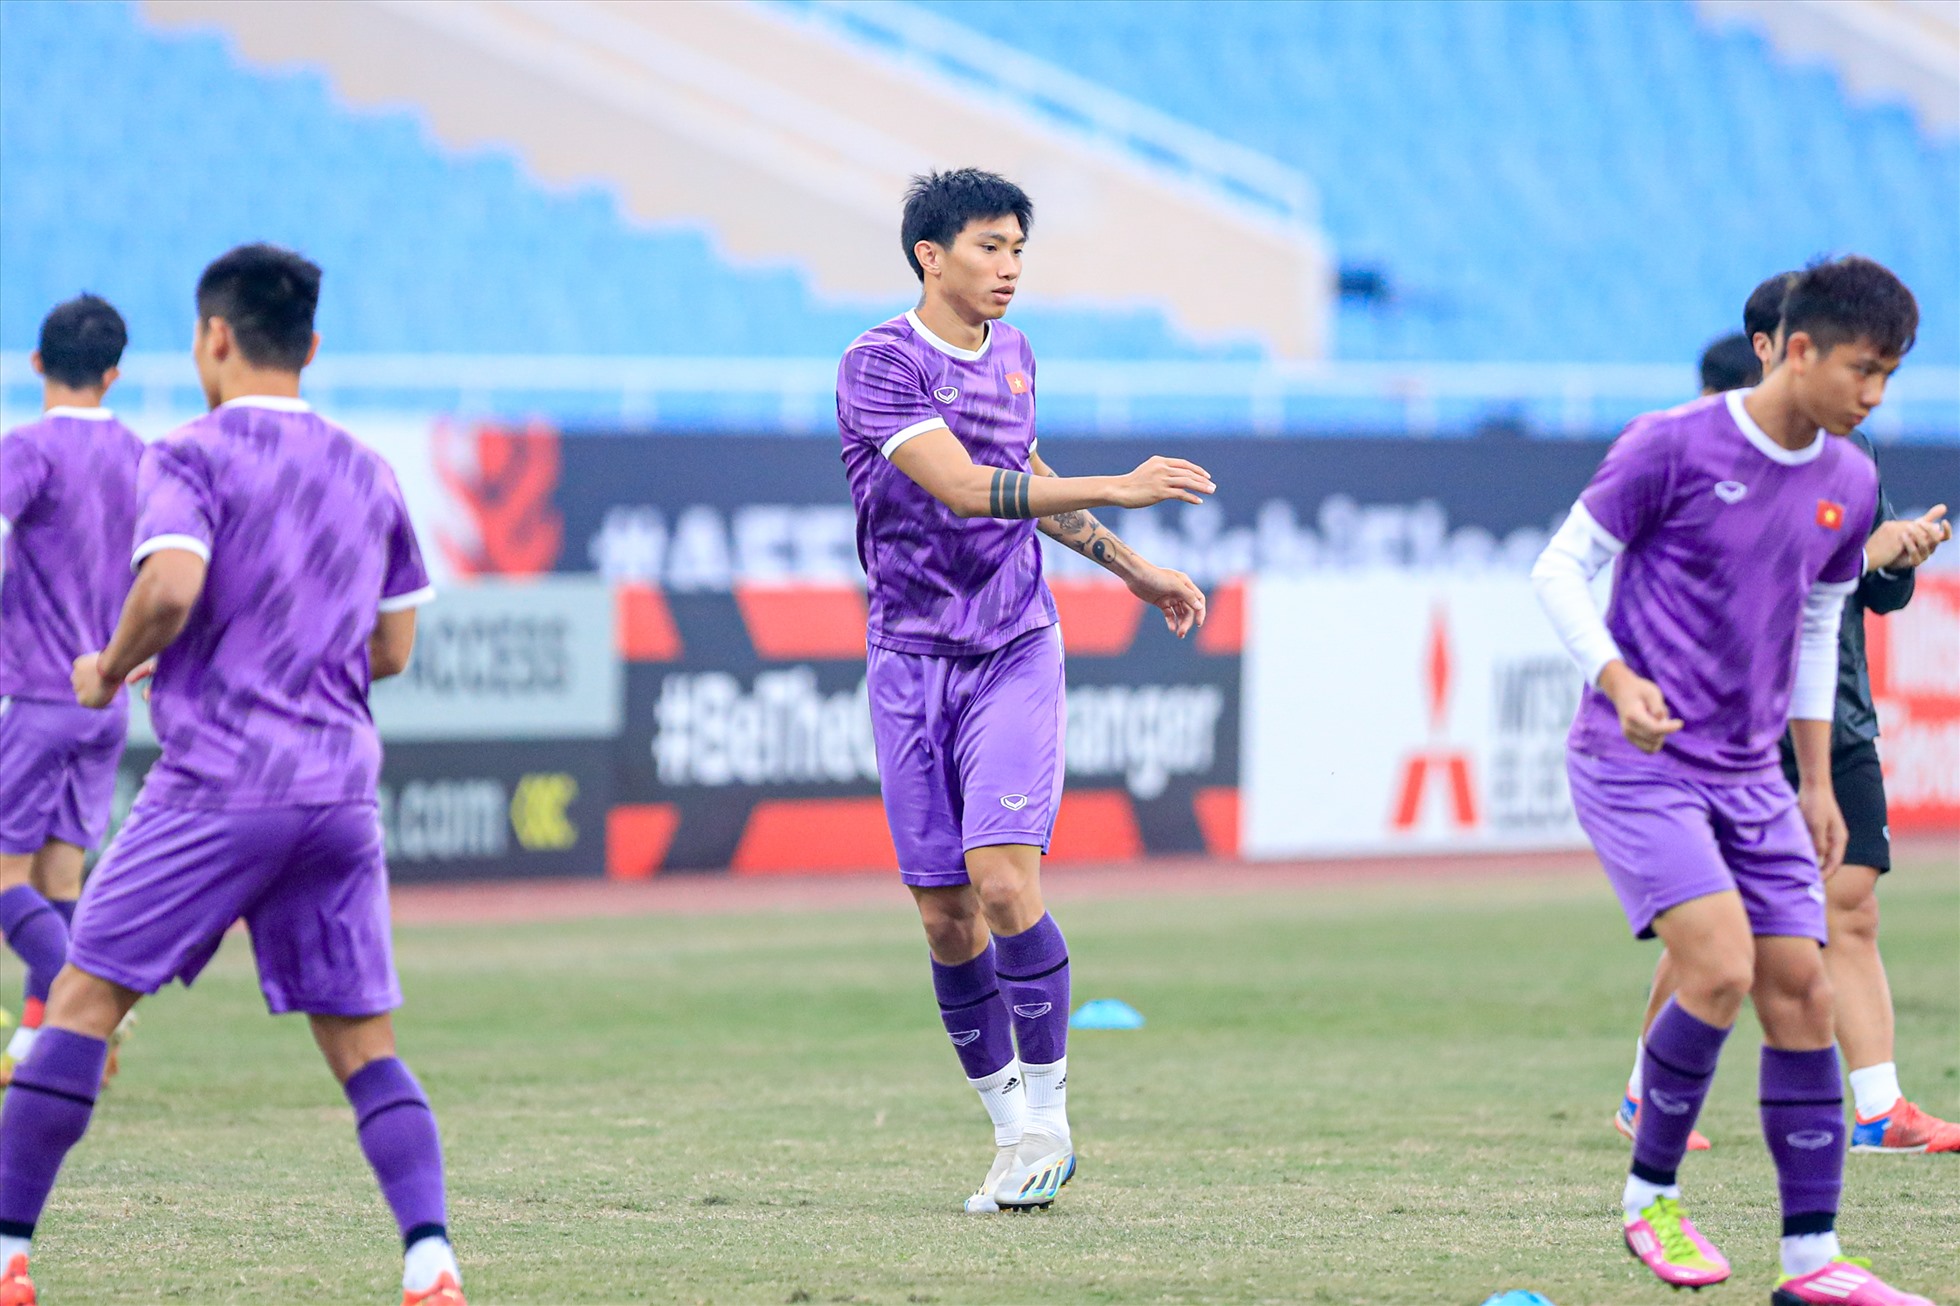 Tinh thần thoải mái của các cầu thủ giúp tuyển Việt Nam tự tin hướng đến trận đấu gặp Indonesia tại bán kết lượt về AFF Cup 2022, diễn ra vào lúc 19h30 ngày 9.1 trên sân Mỹ Đình.